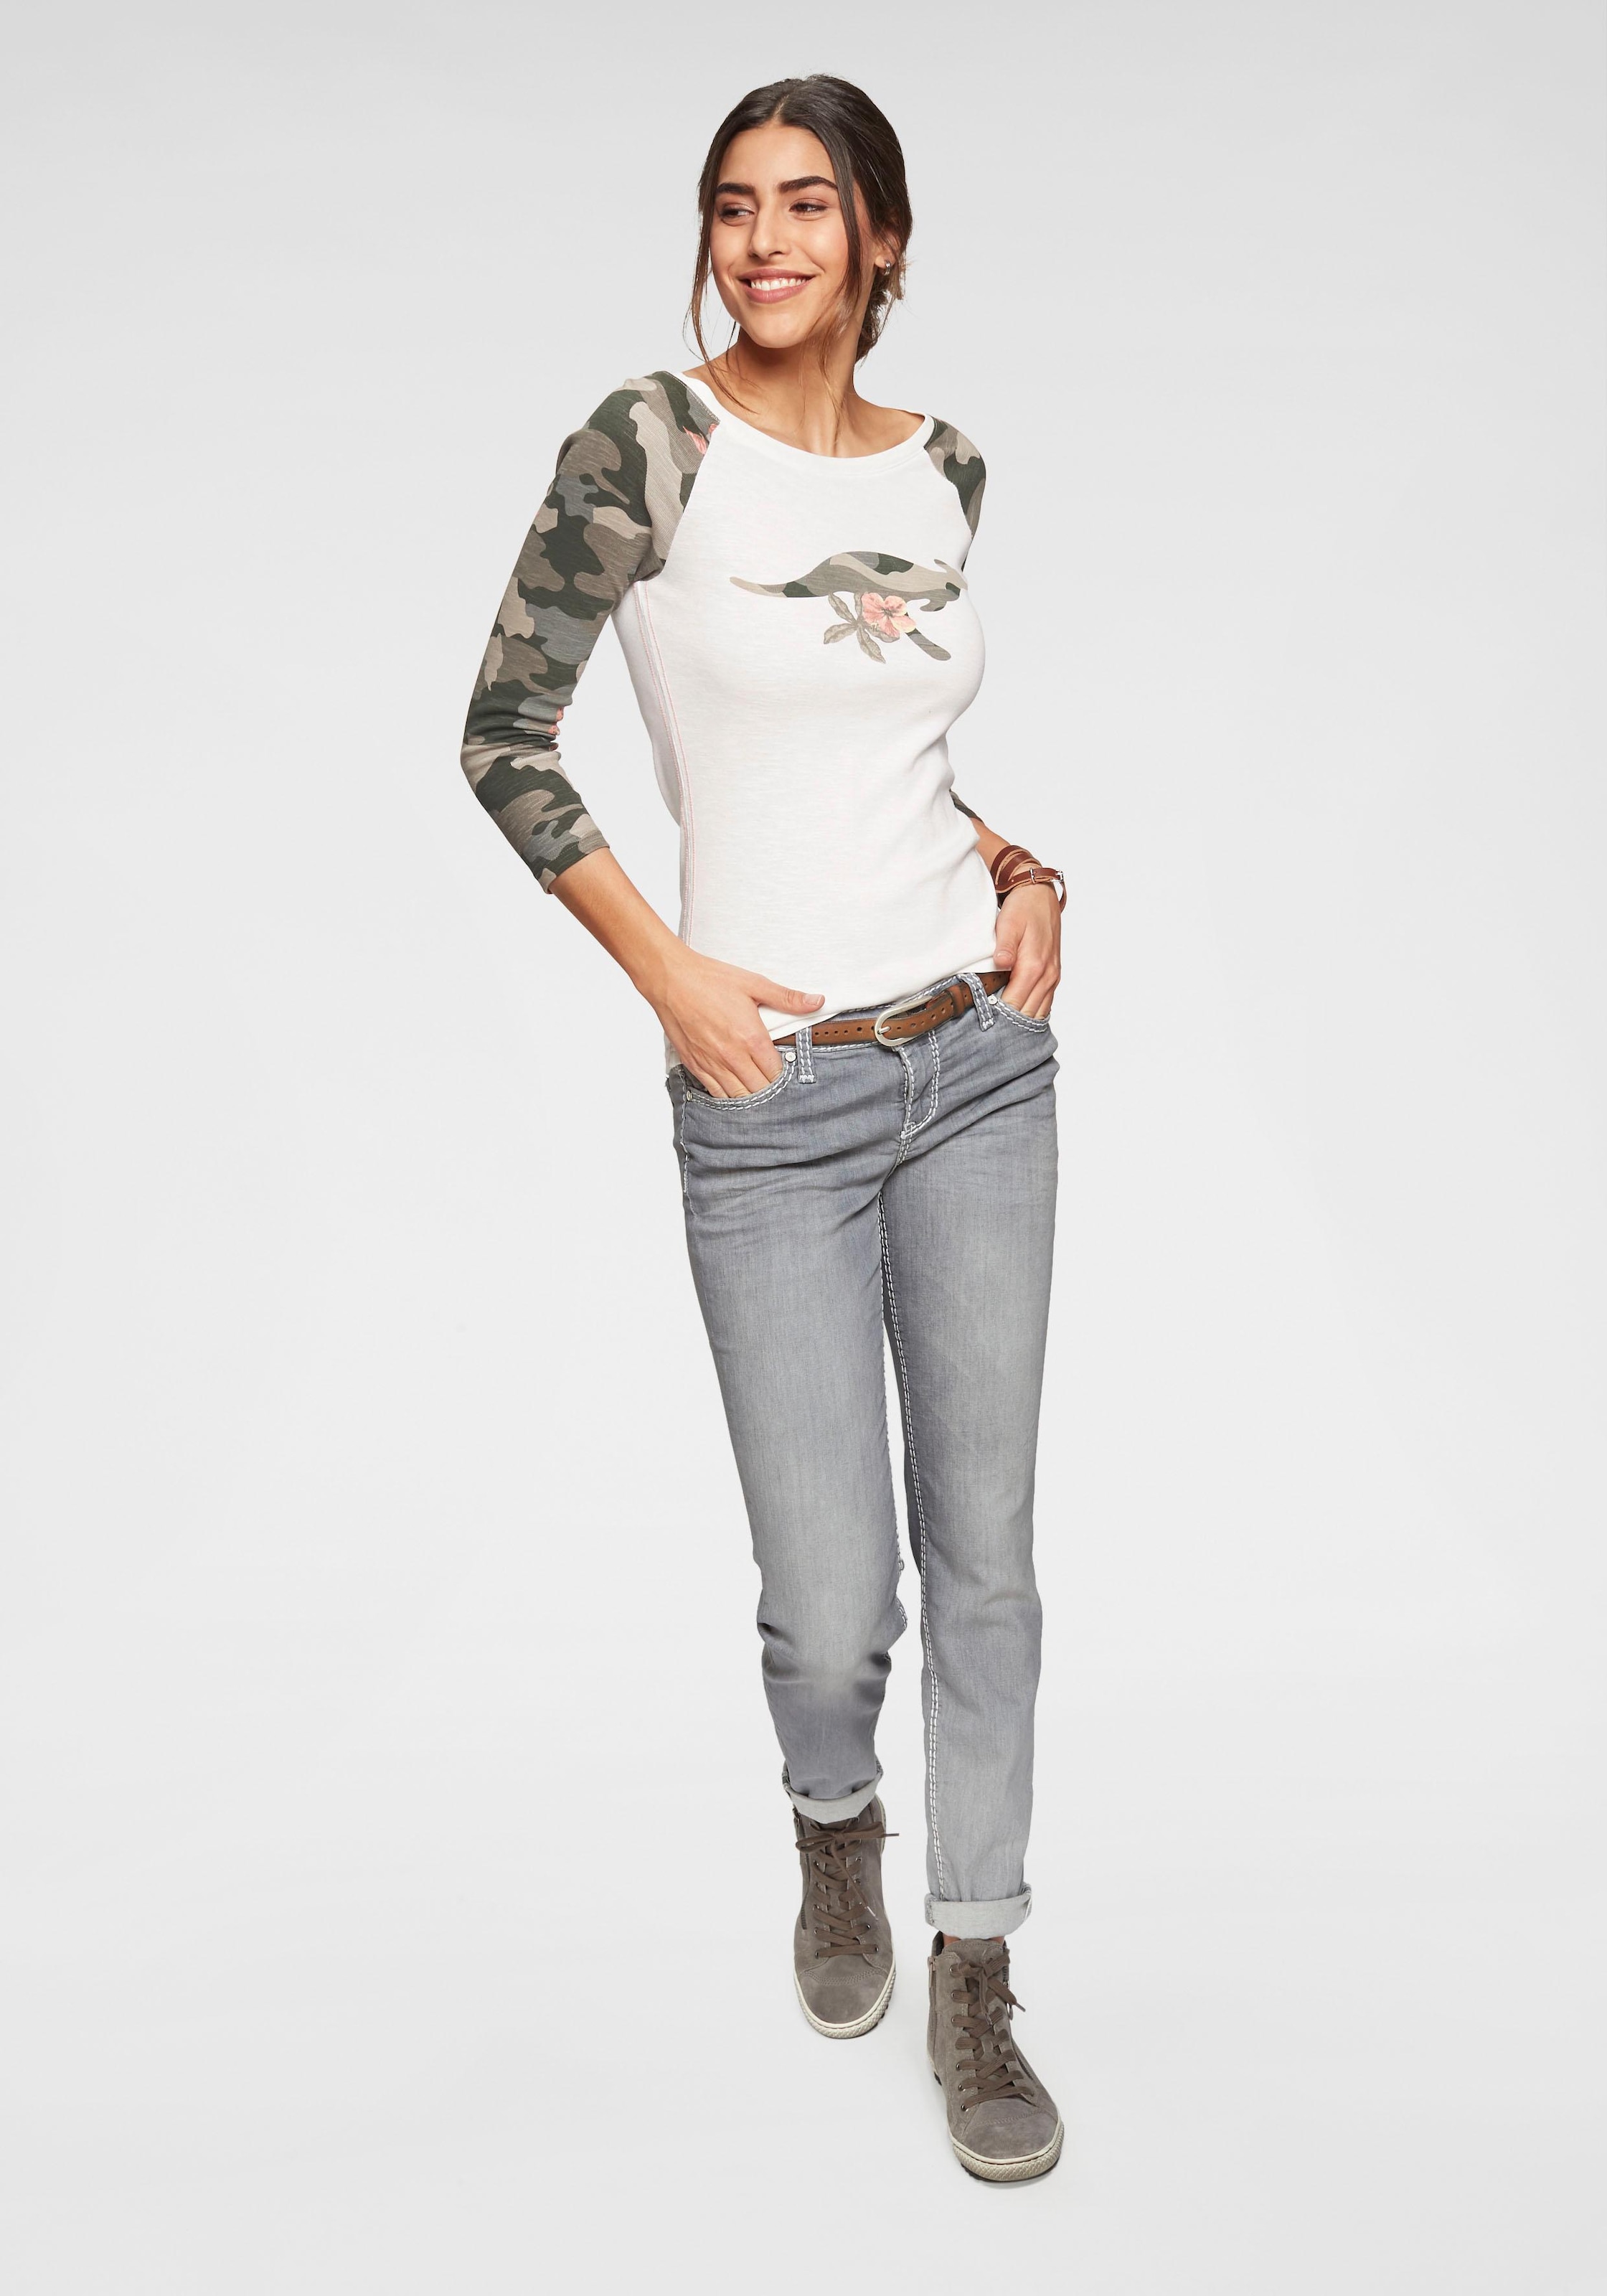 KangaROOS 3/4-Arm-Shirt, mit tarnfarbenen Camouflage-Ärmeln und Front-Print  bei ♕